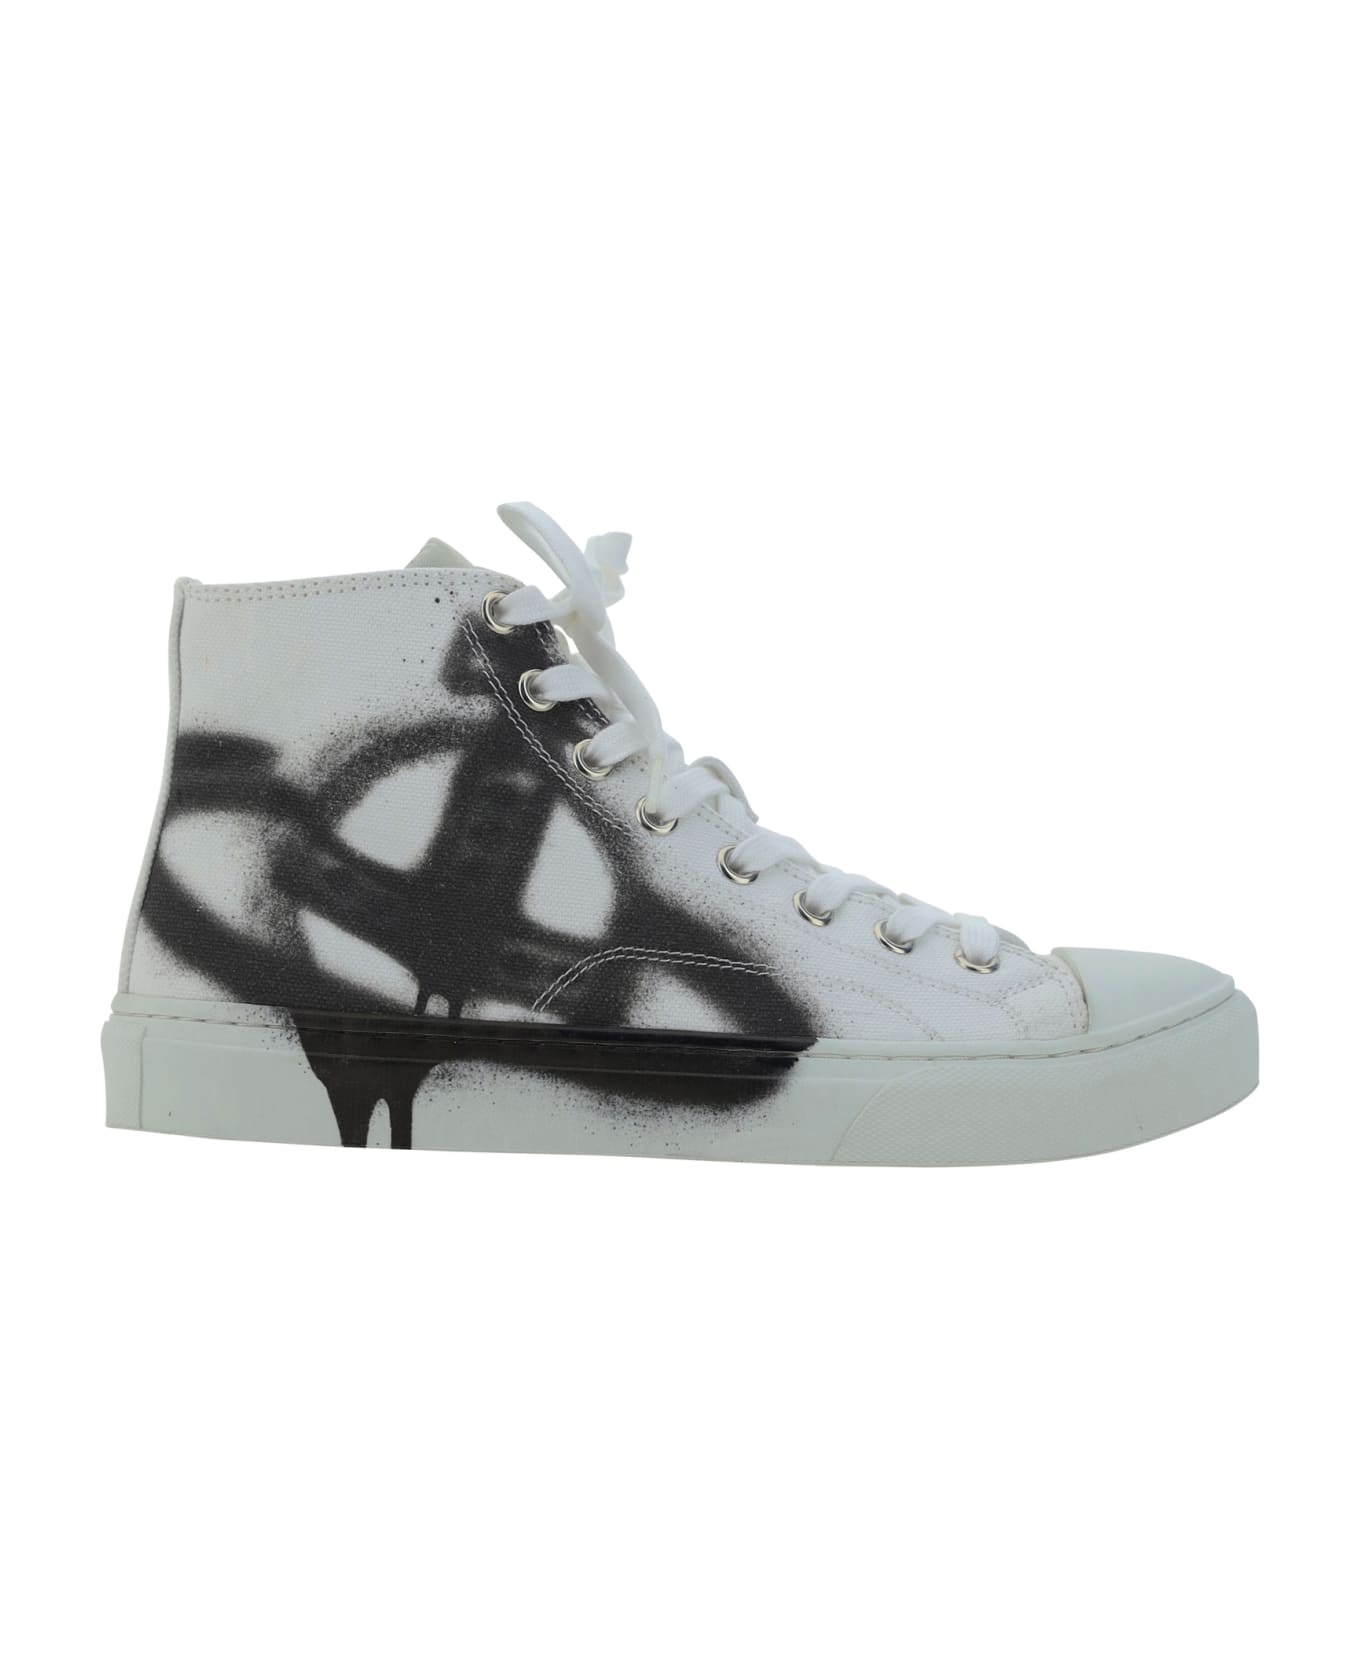 Vivienne Westwood Plimsoll Sneakers - White/black Orb